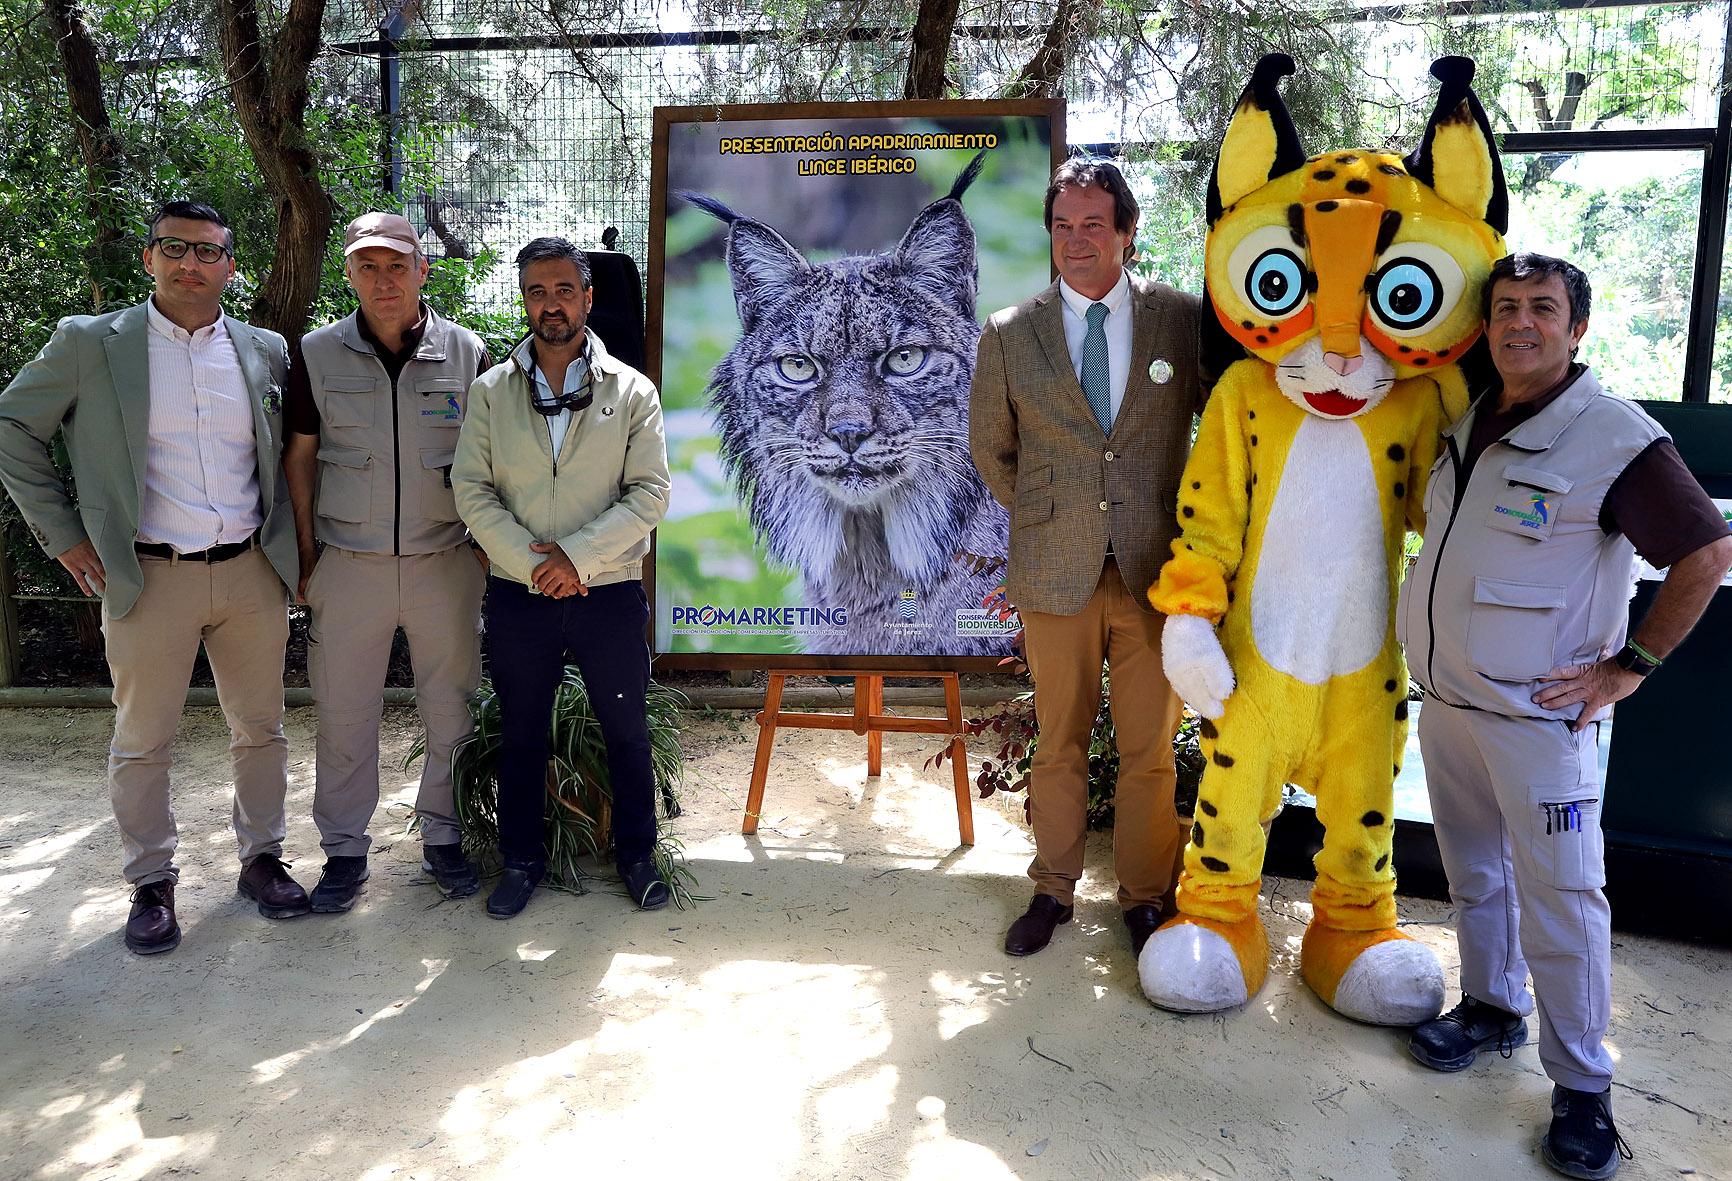 Apadrinamiento en el Zoo de Jerez a los linces ibéricos a cargo de Promarketing